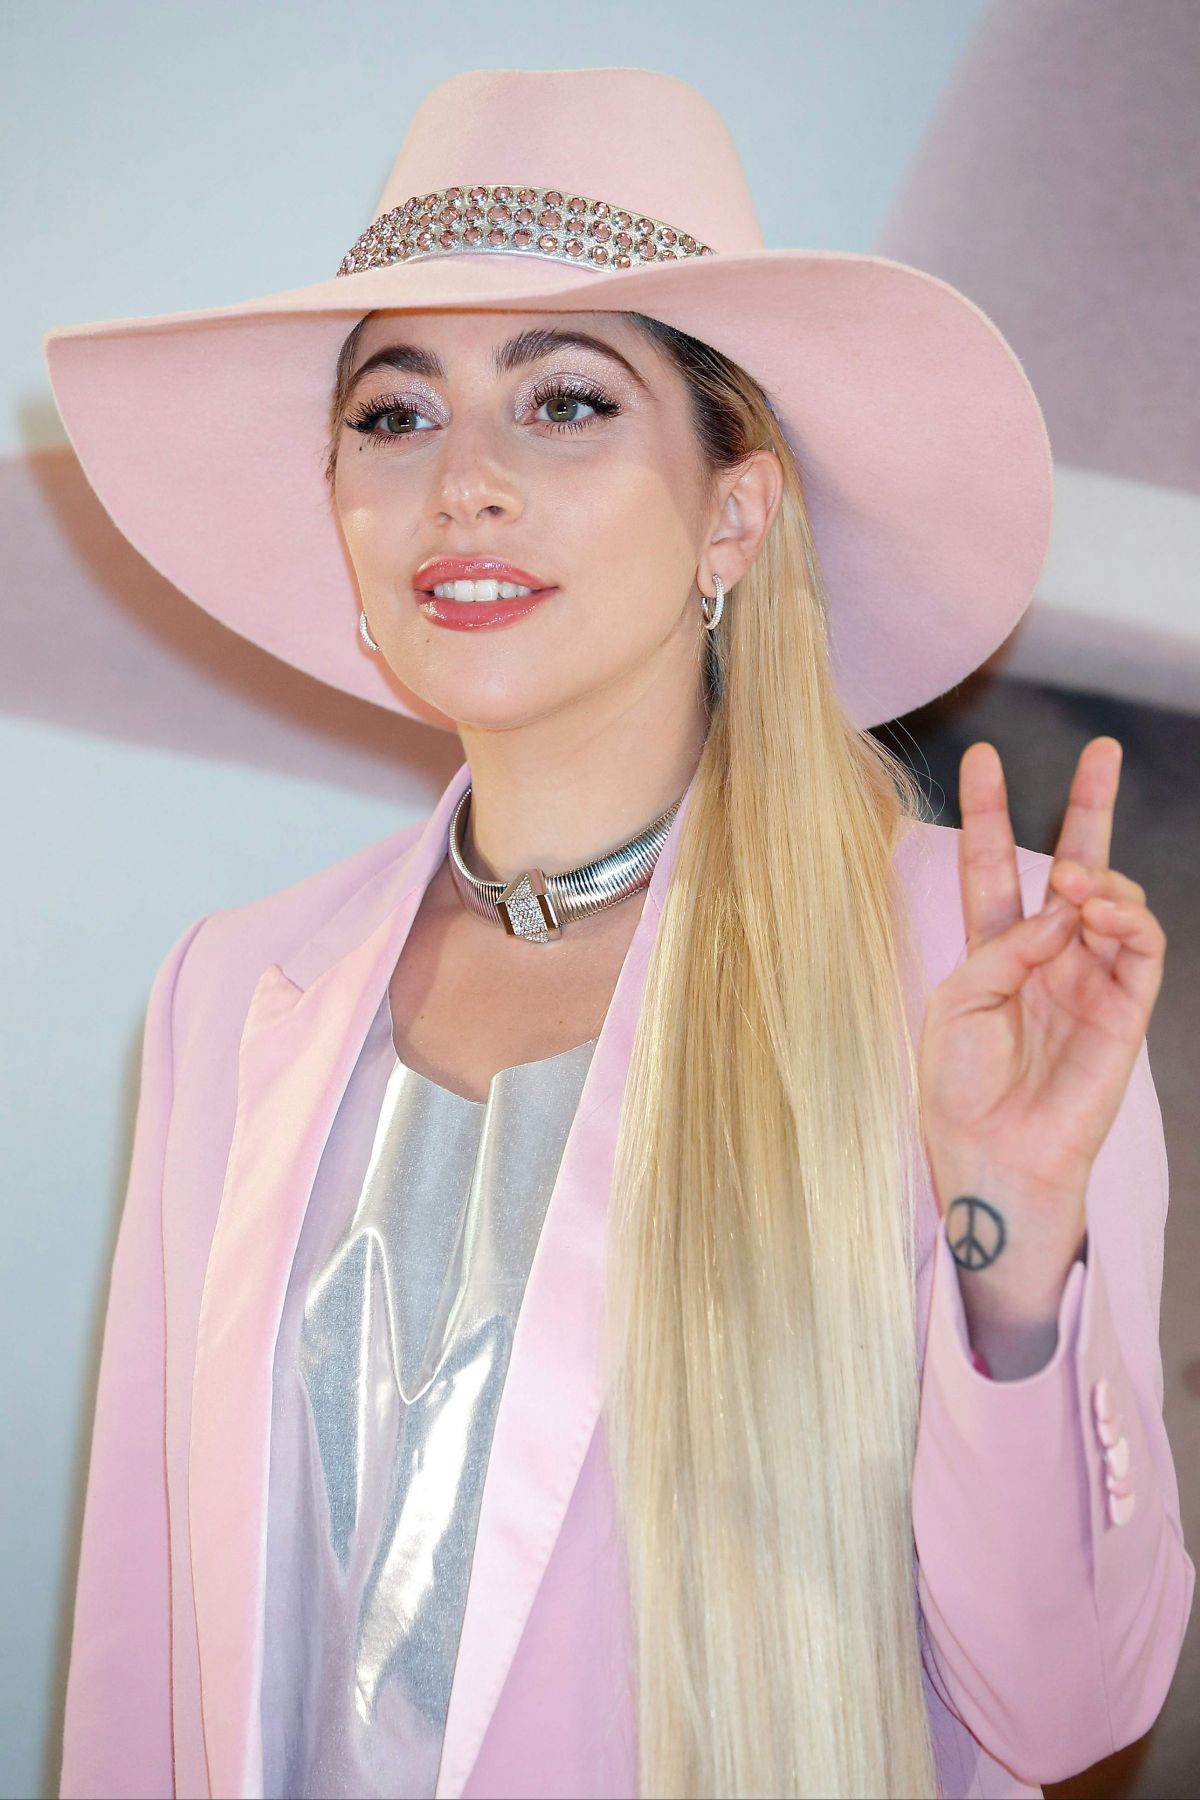 How Gaga Has Affected Miley Cyrus Gaga Thoughts Gaga Daily 